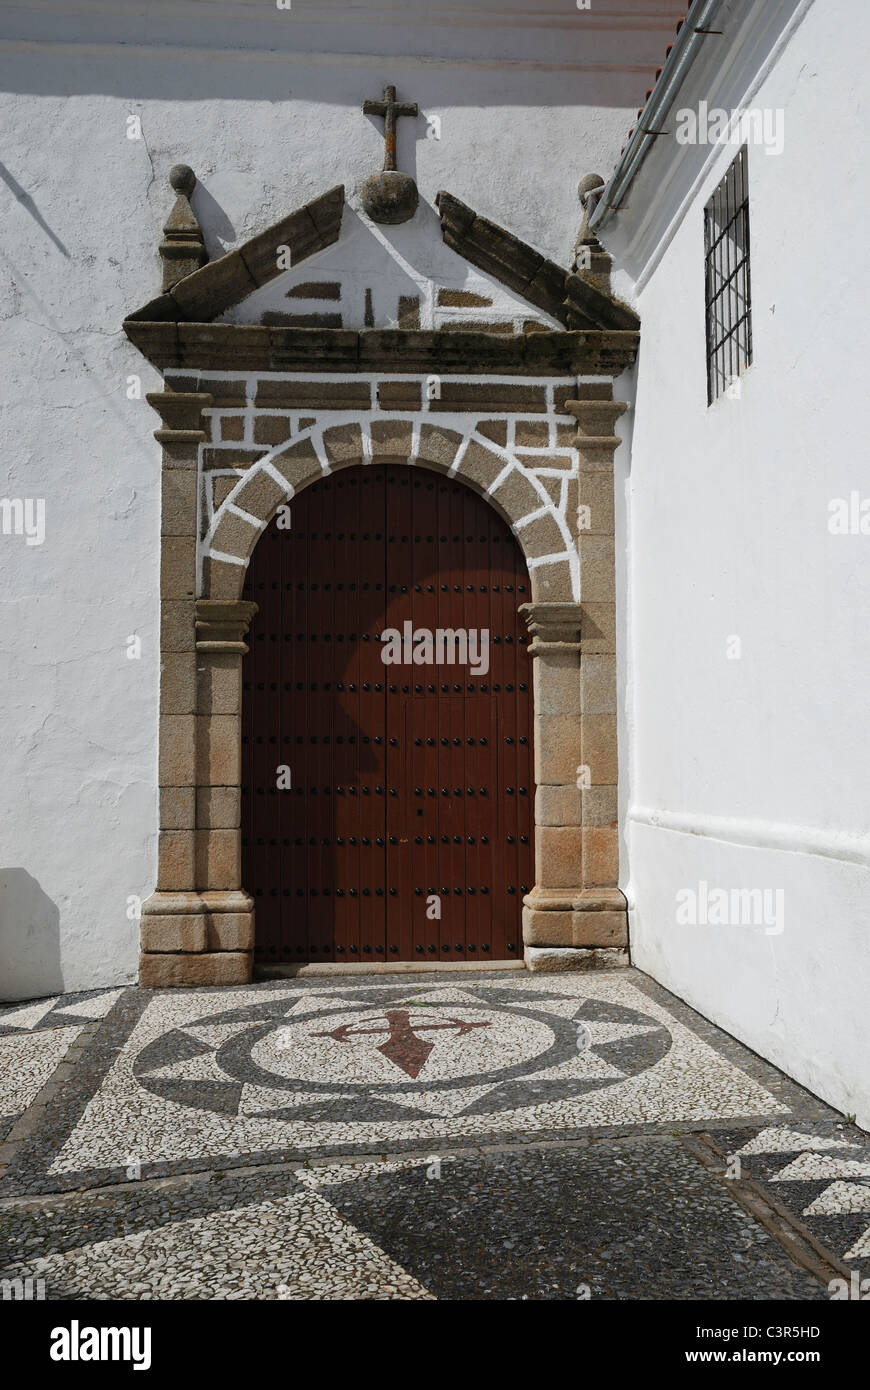 A church entrance in Fuentes de León, in the province of BadajozFuentes de León, in the province of Badajoz, Extremadura, Spain. Stock Photo